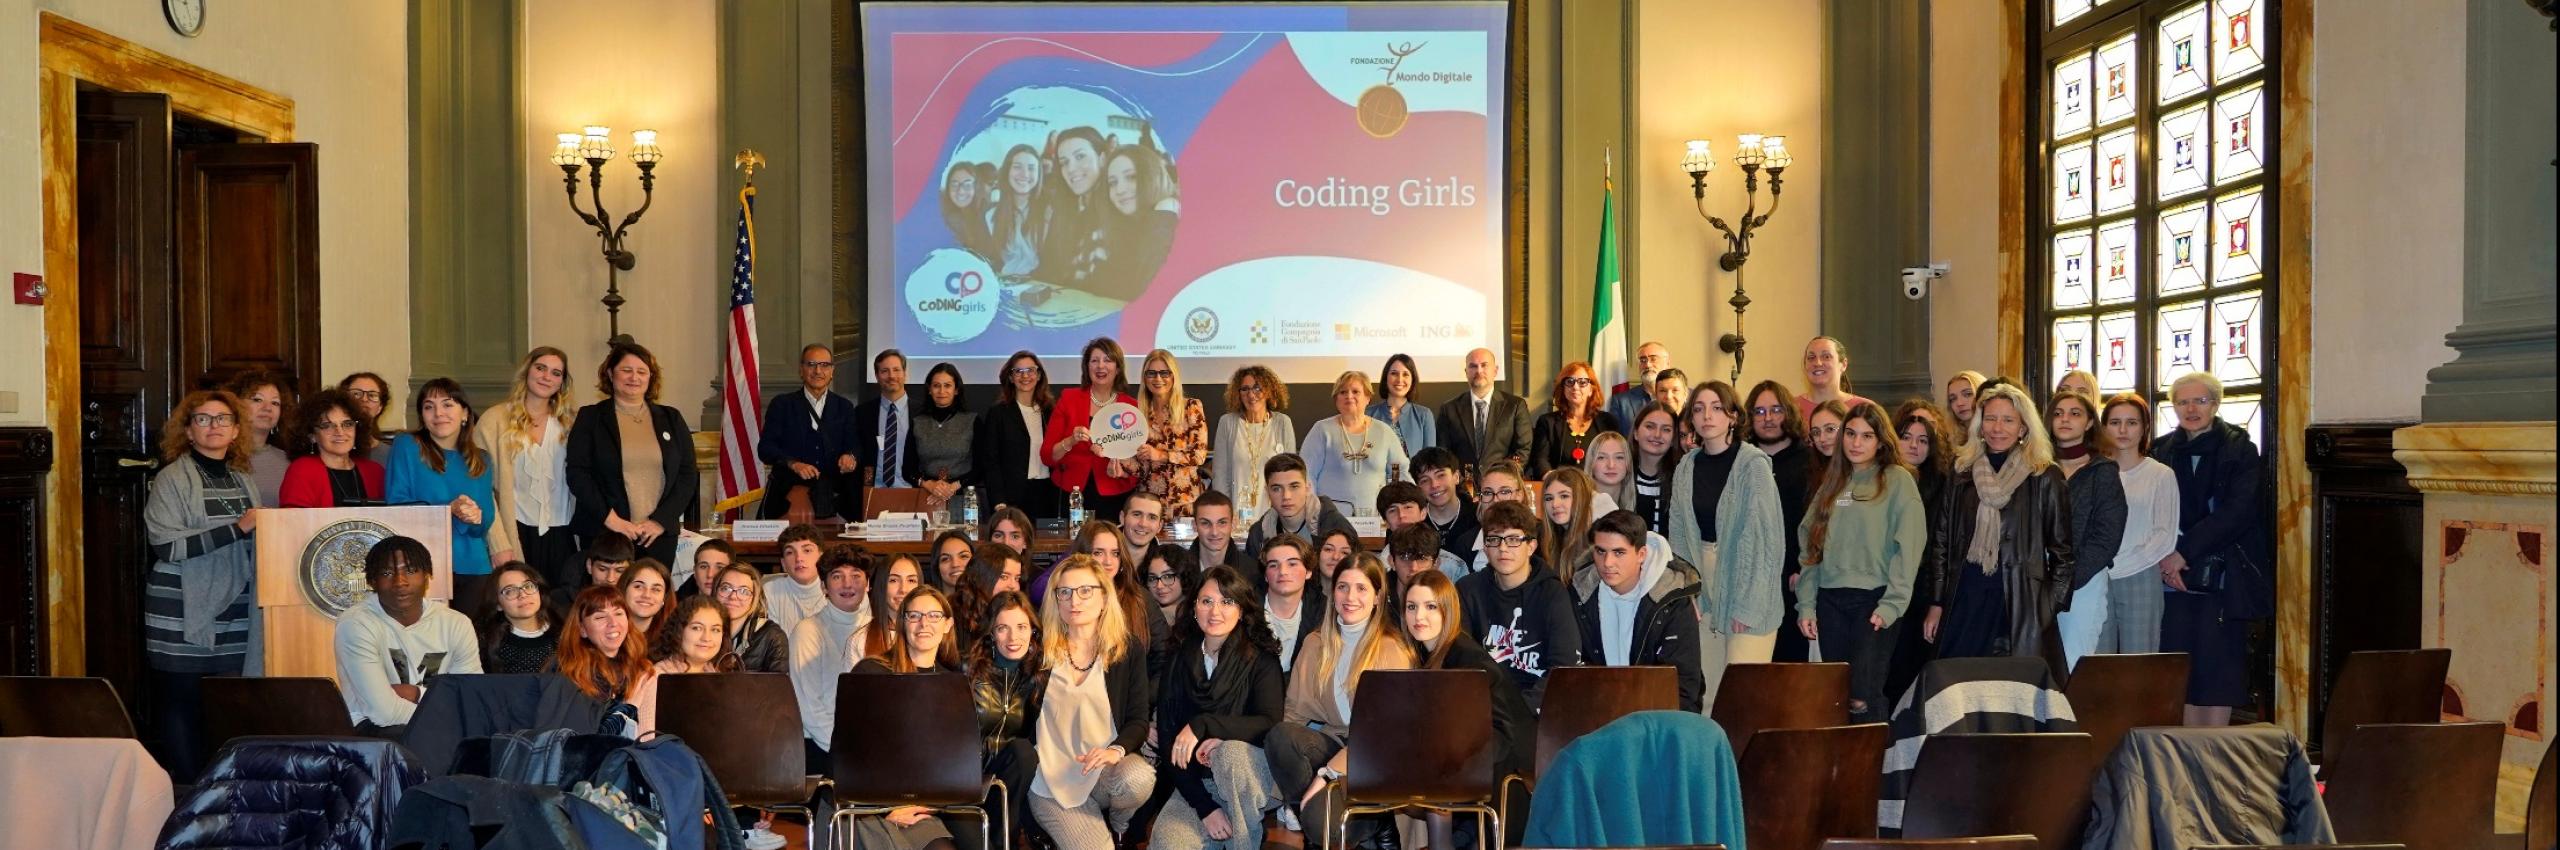 Presentazione della nona edizione di Coding Girls